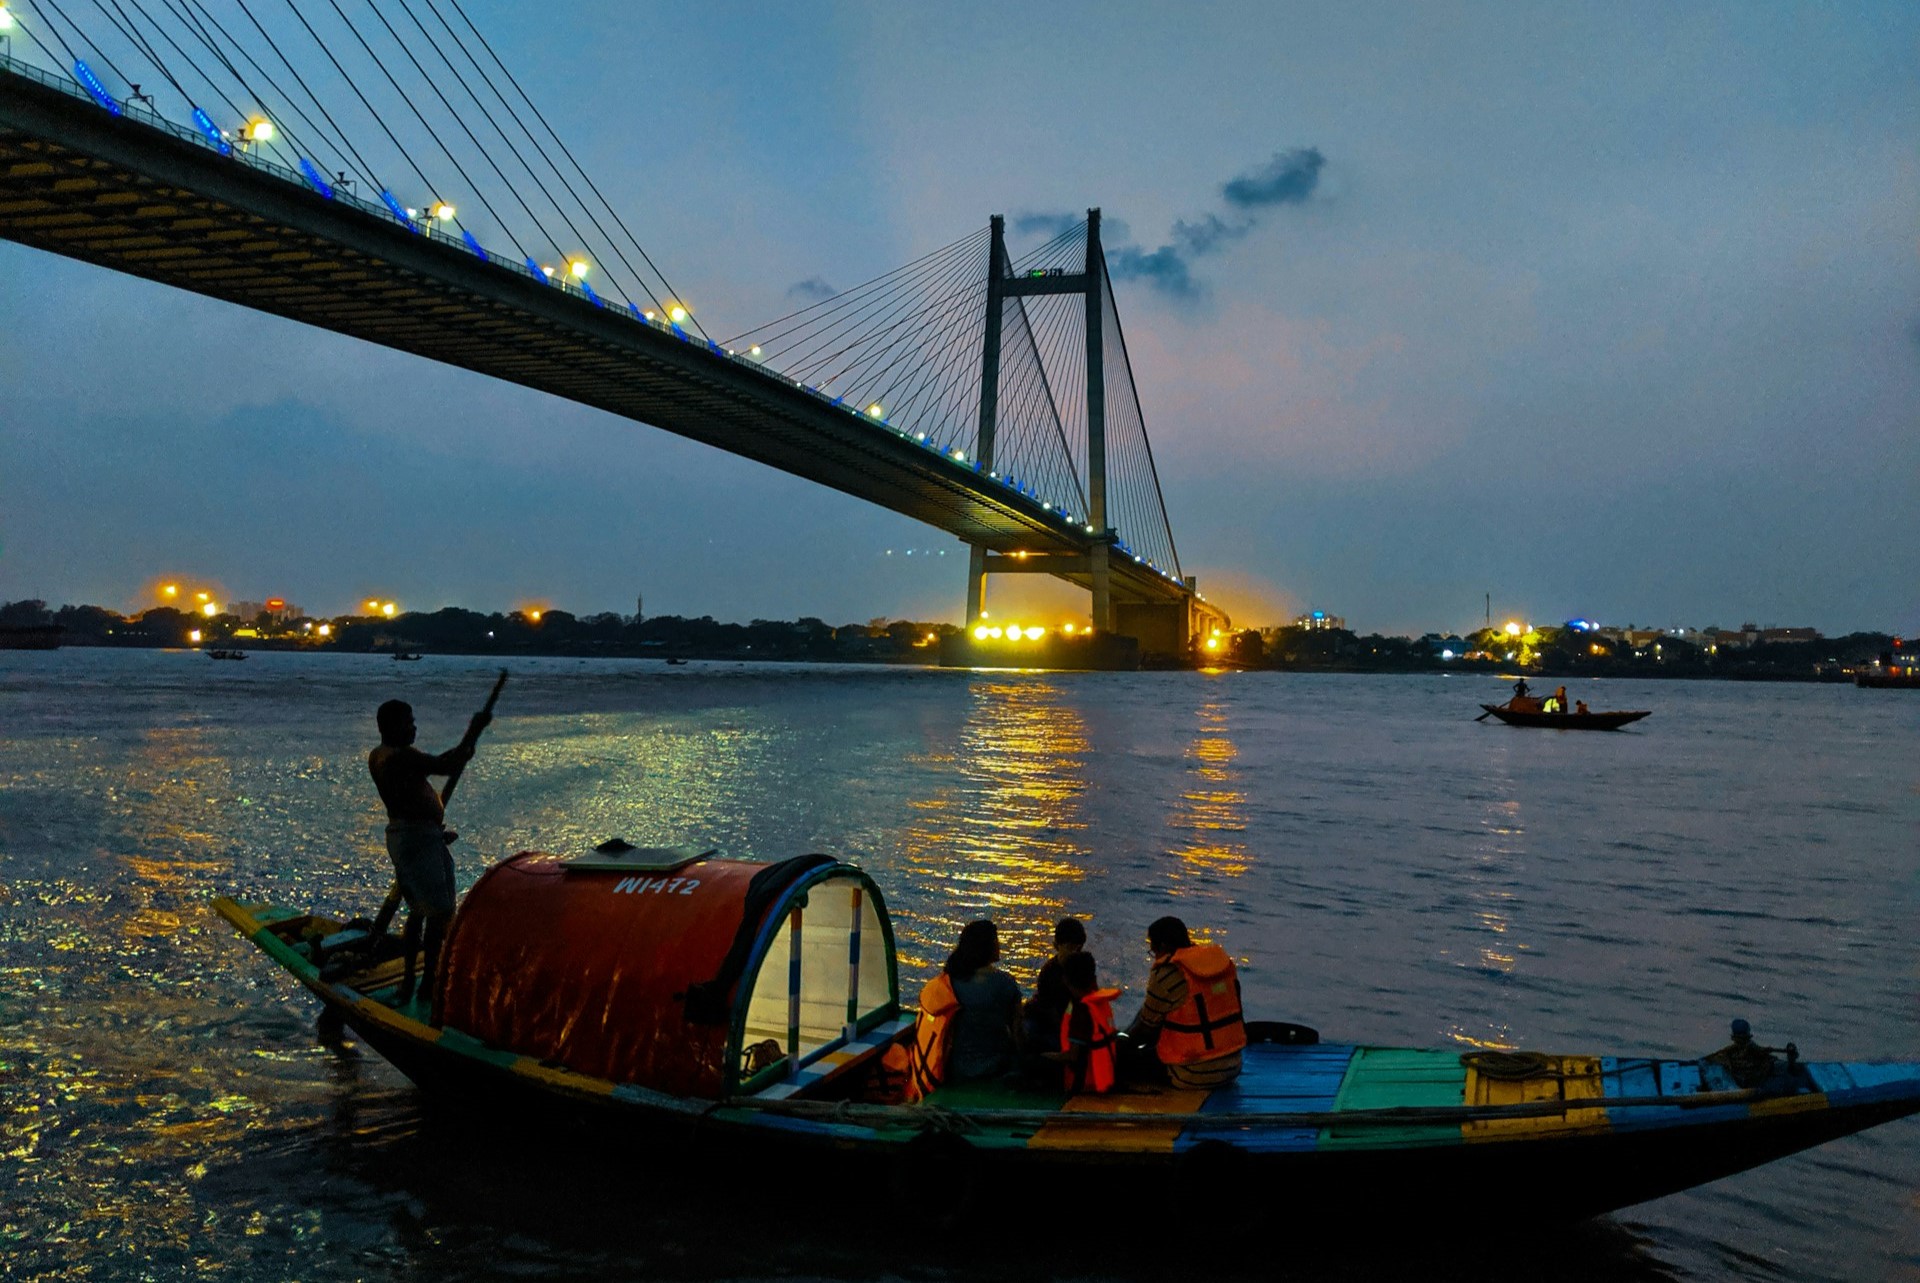 Charm of the City - Kolkata Exploration